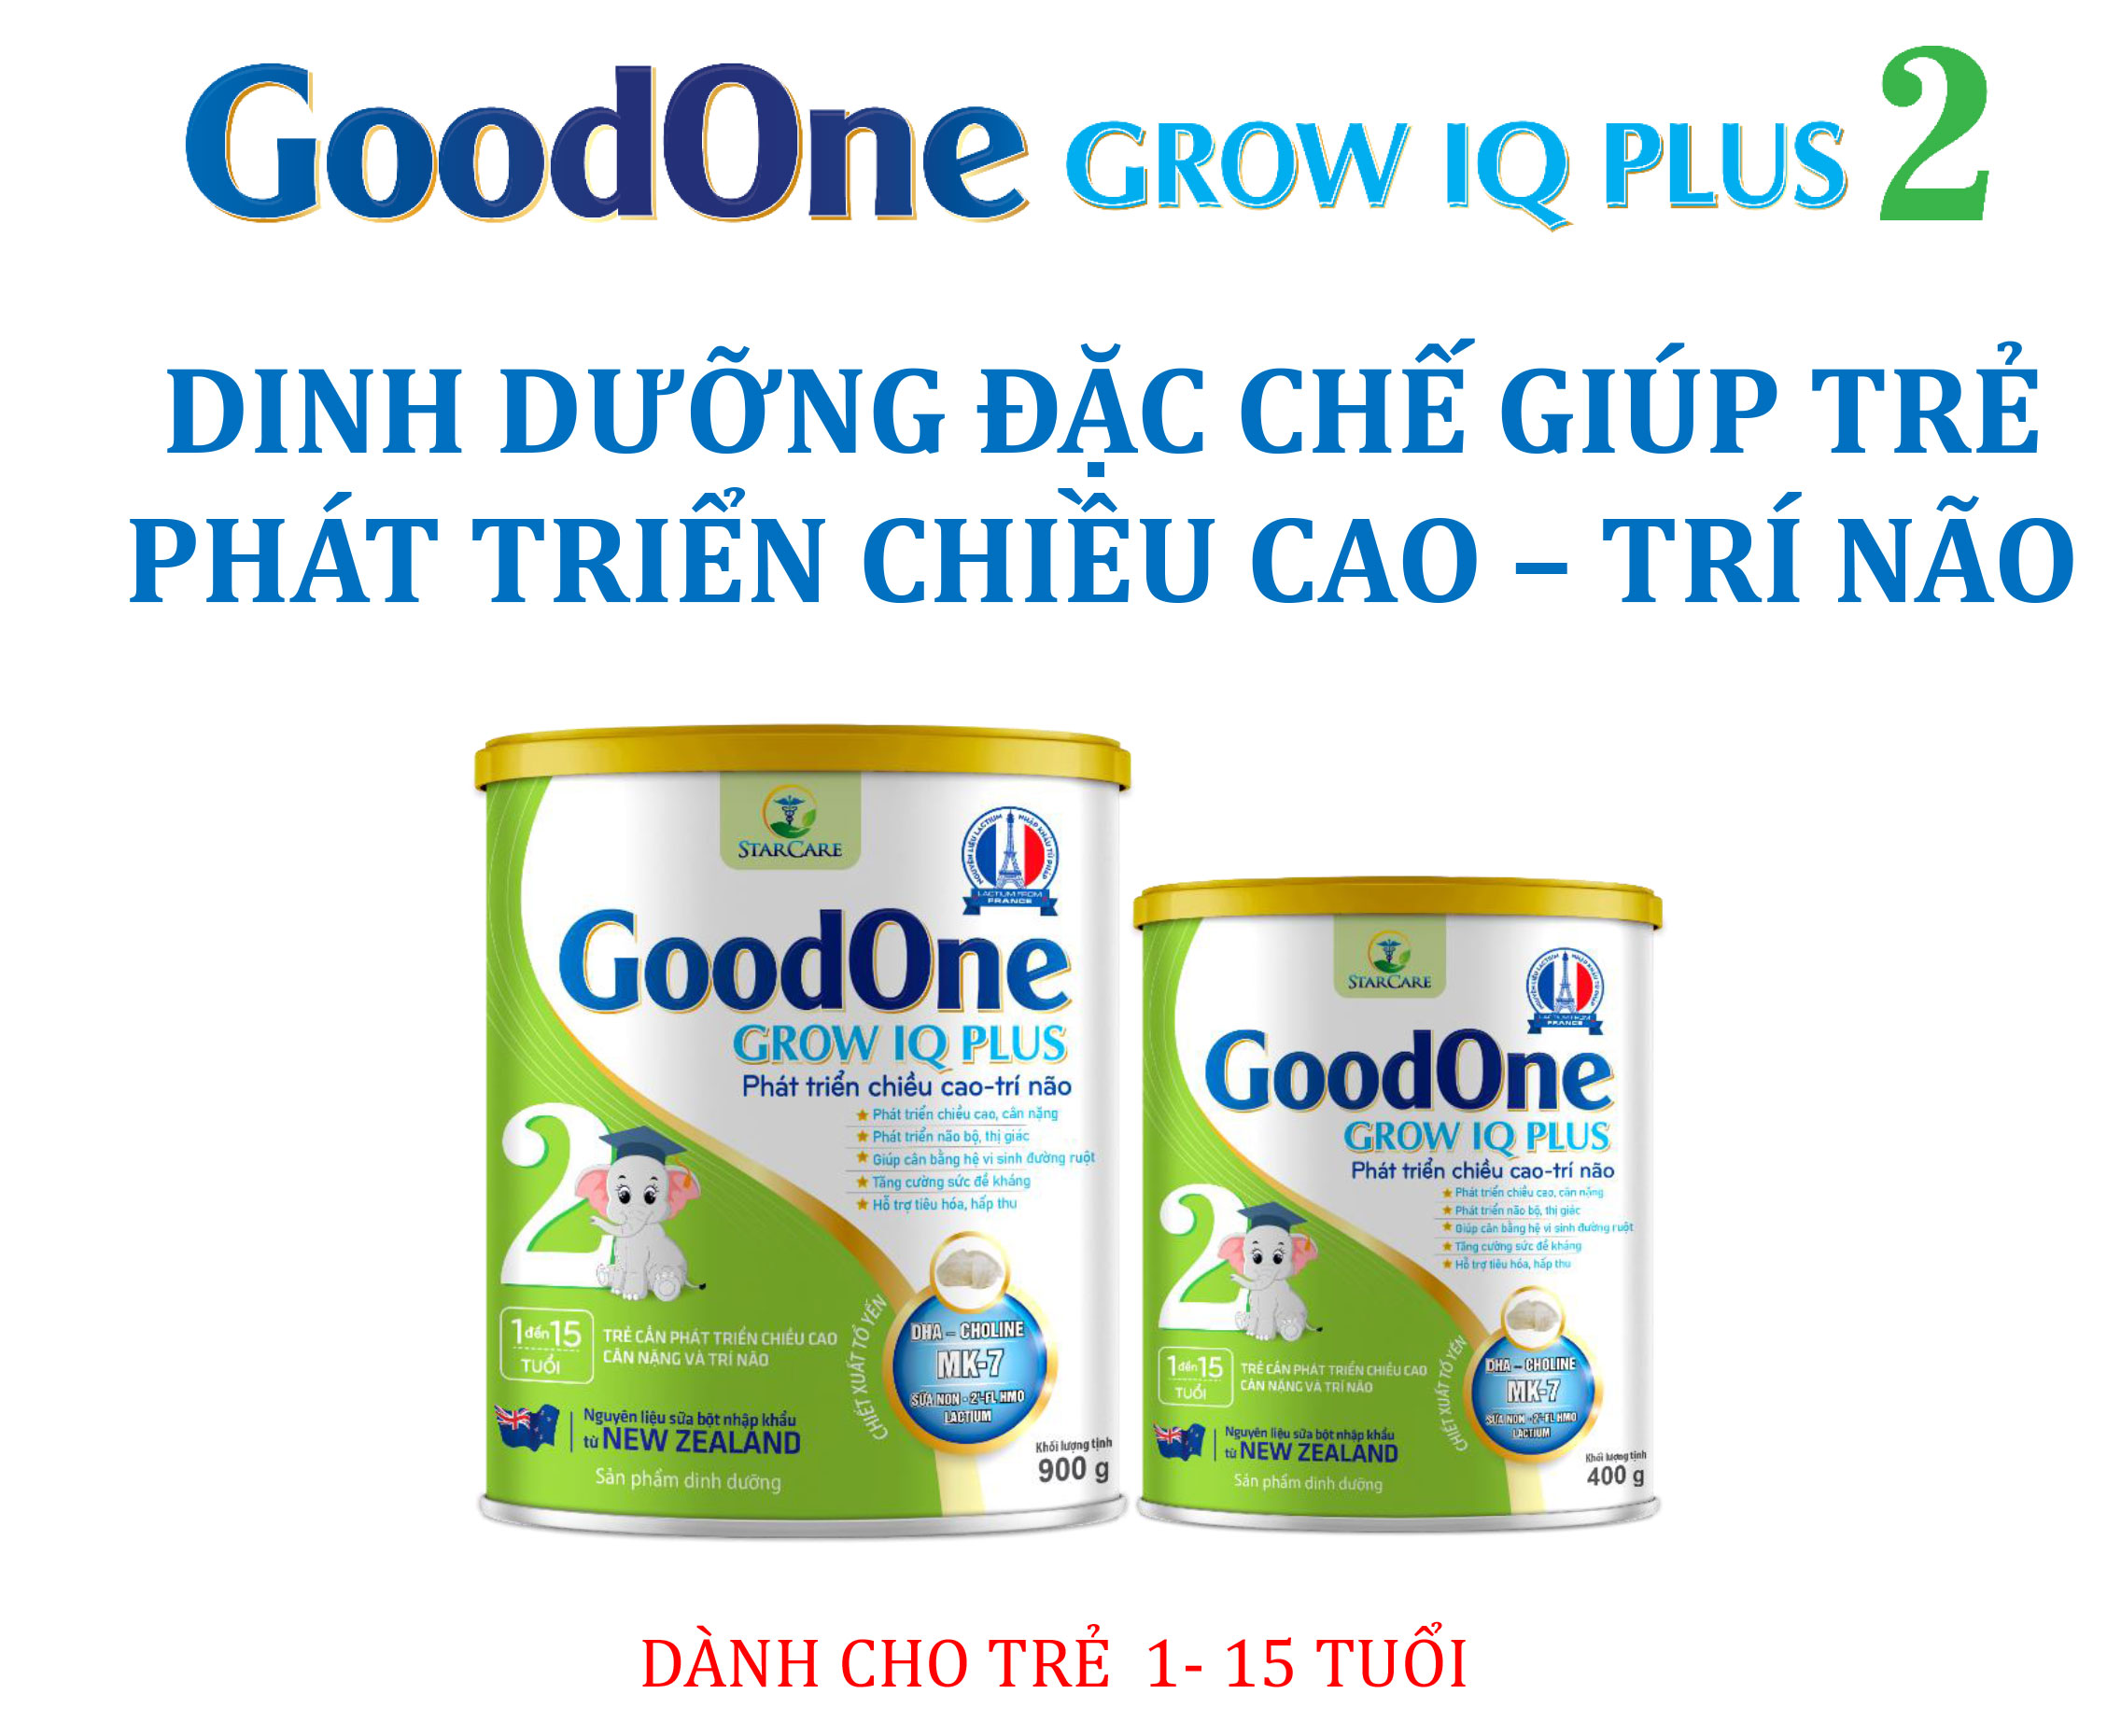 GoodOne Grow IQ Plus 2 - Dinh dưỡng đặc chế giúp phát triển chiều cao, trí não